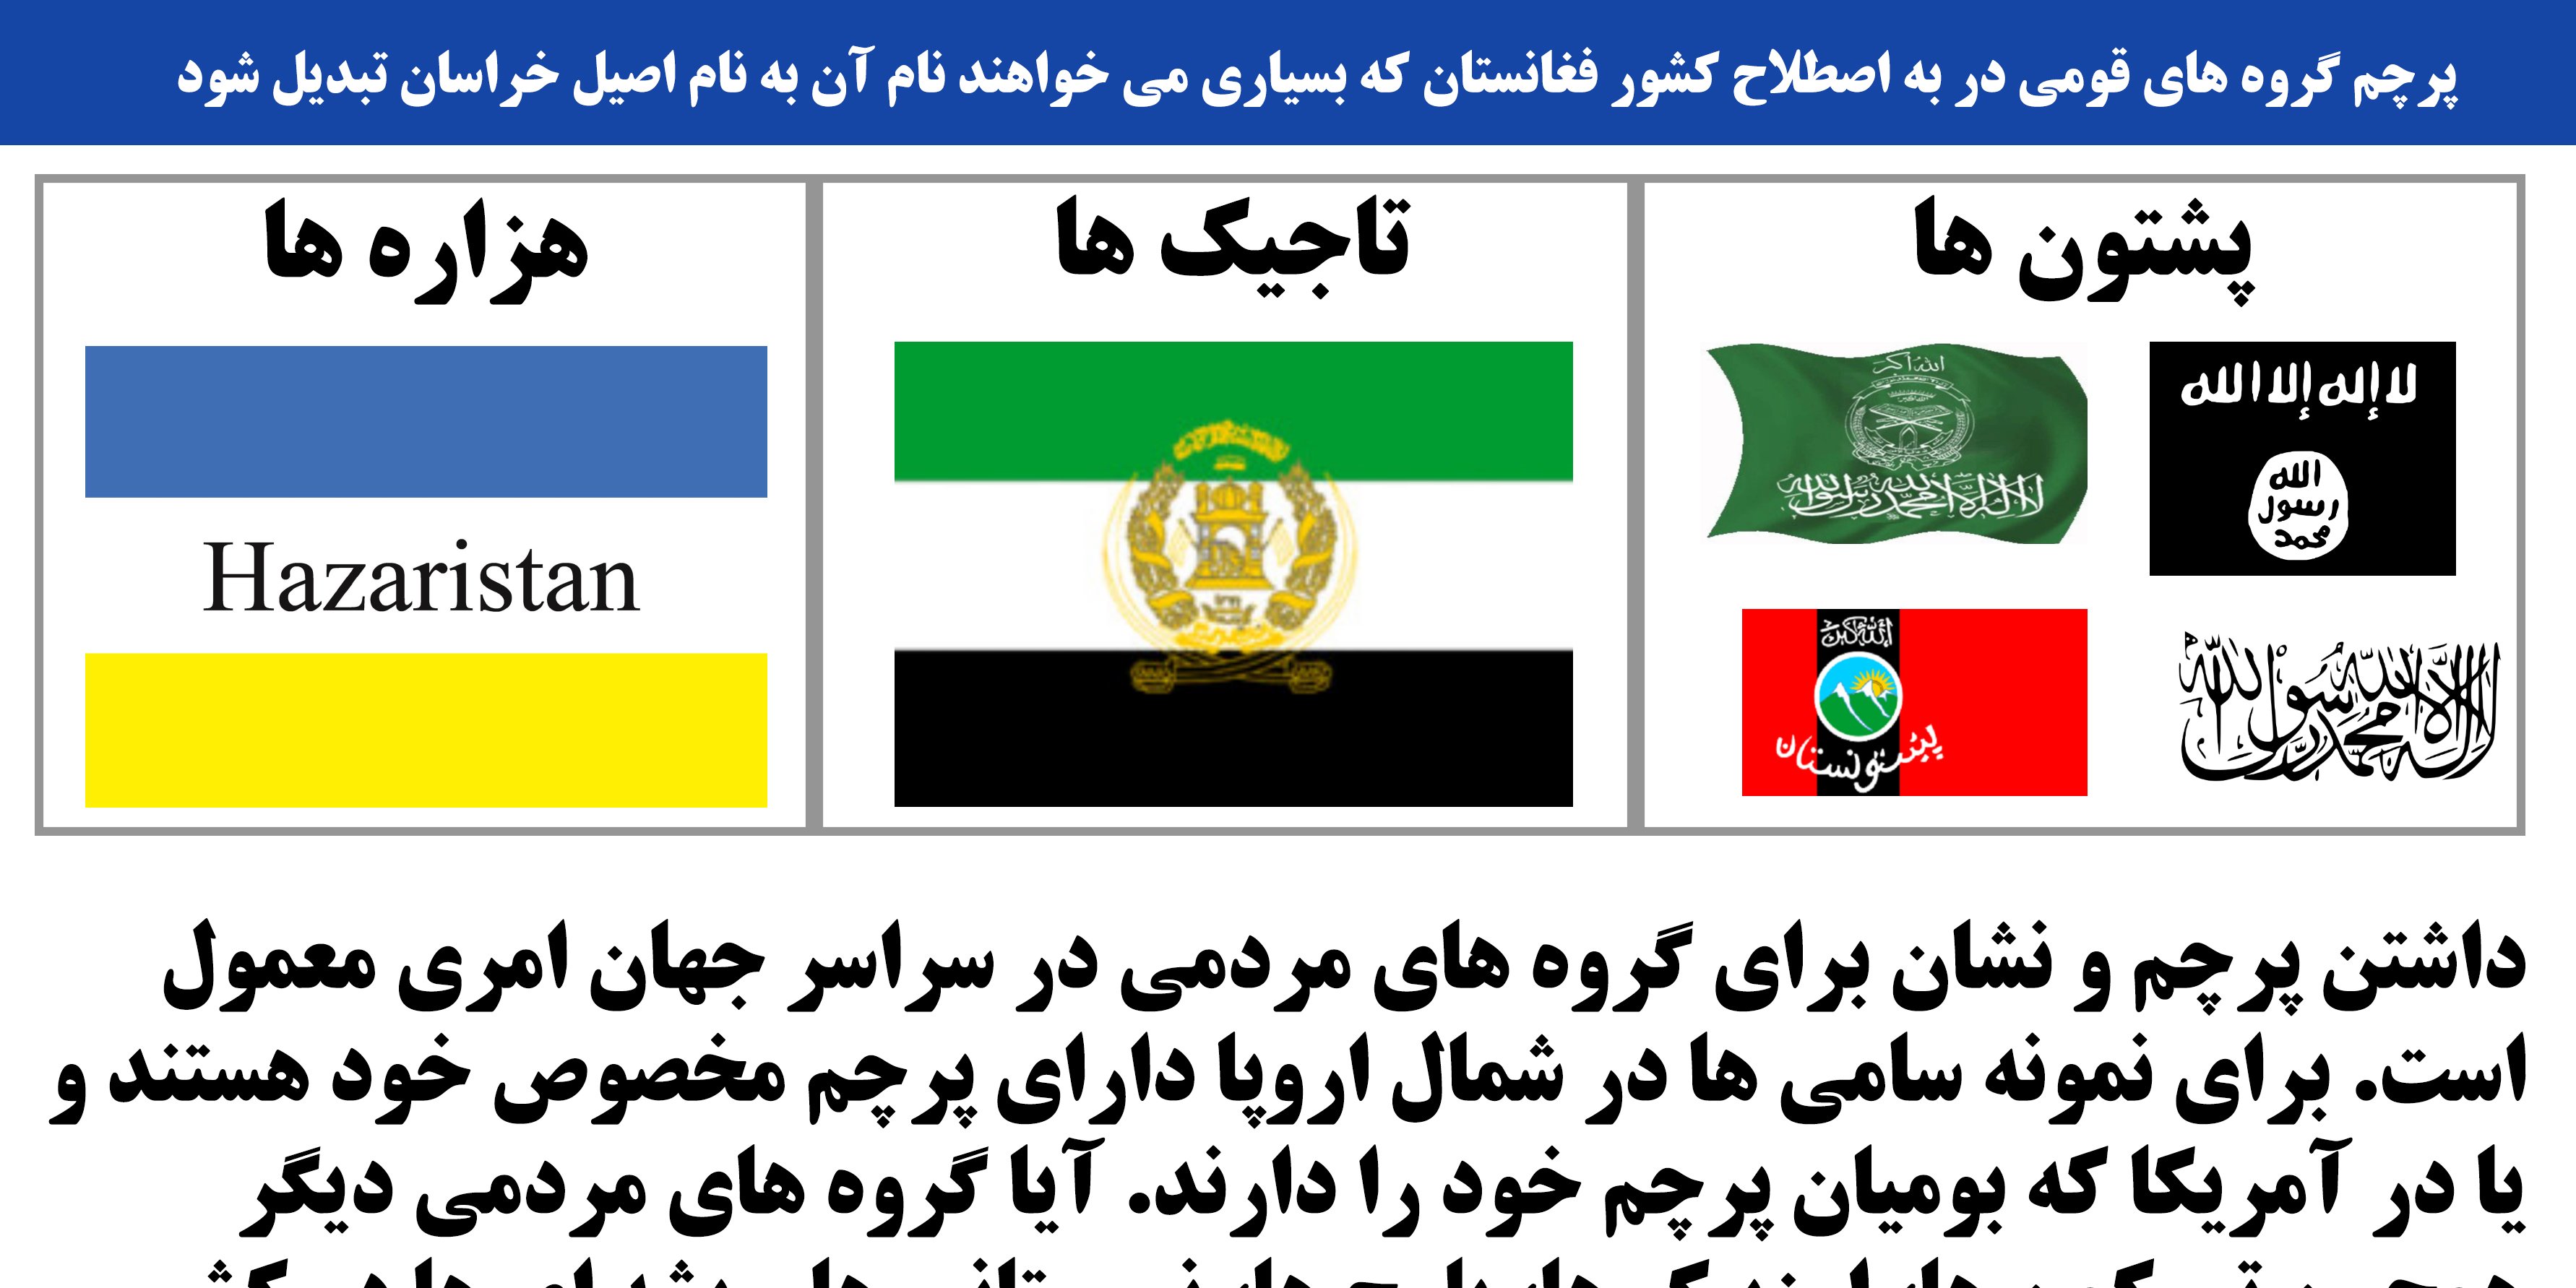 مردم در خراسان/فغانستان از کدام پرچم ها استفاده می کنند؟